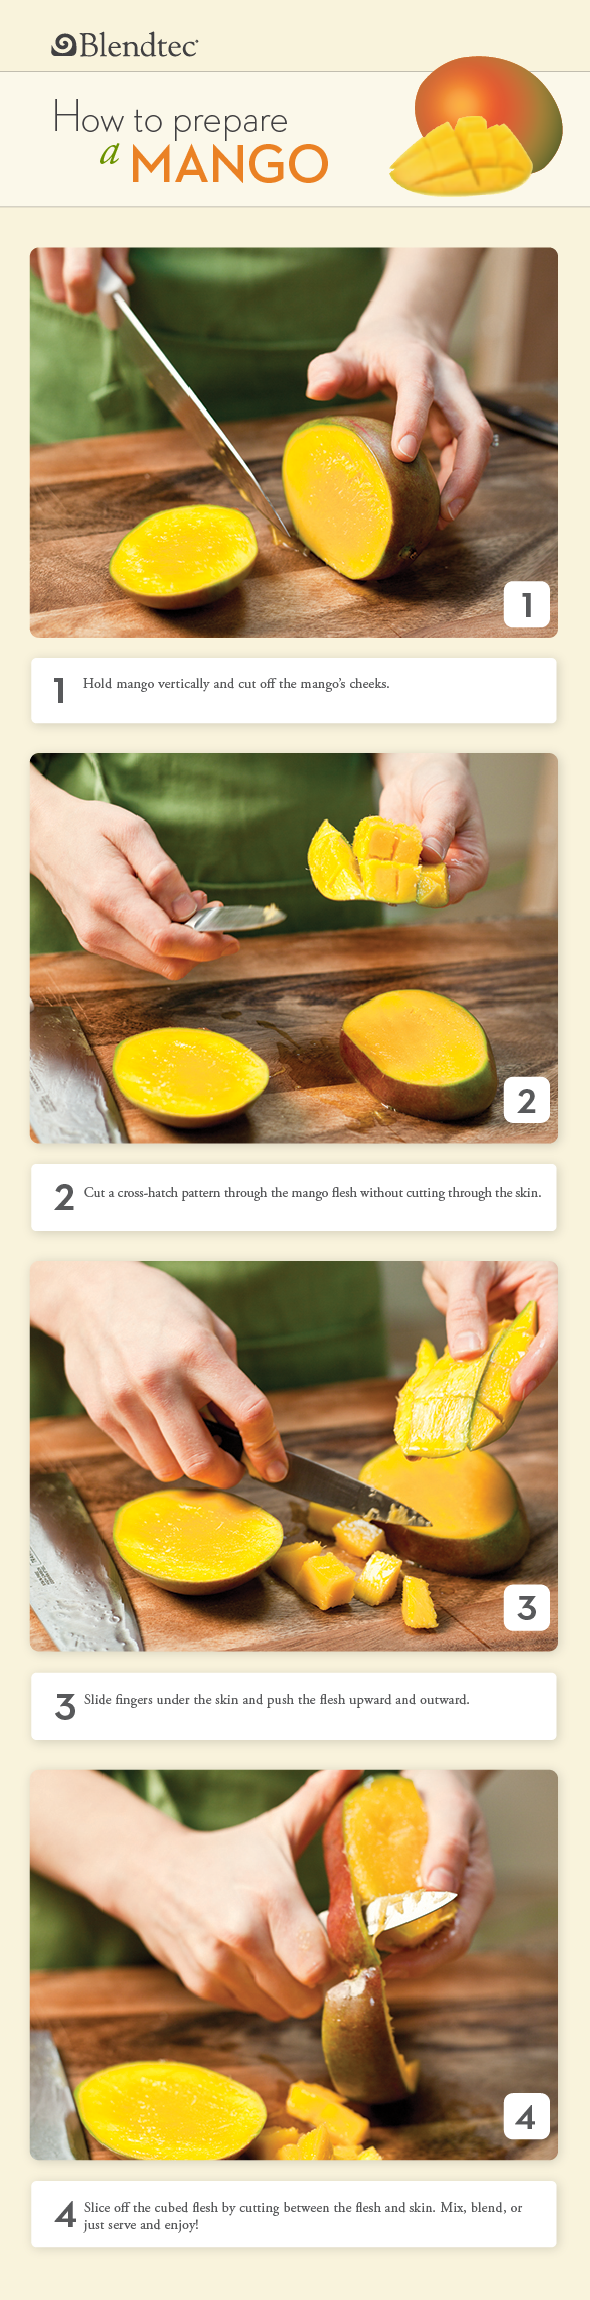 How to Prepare a Mango